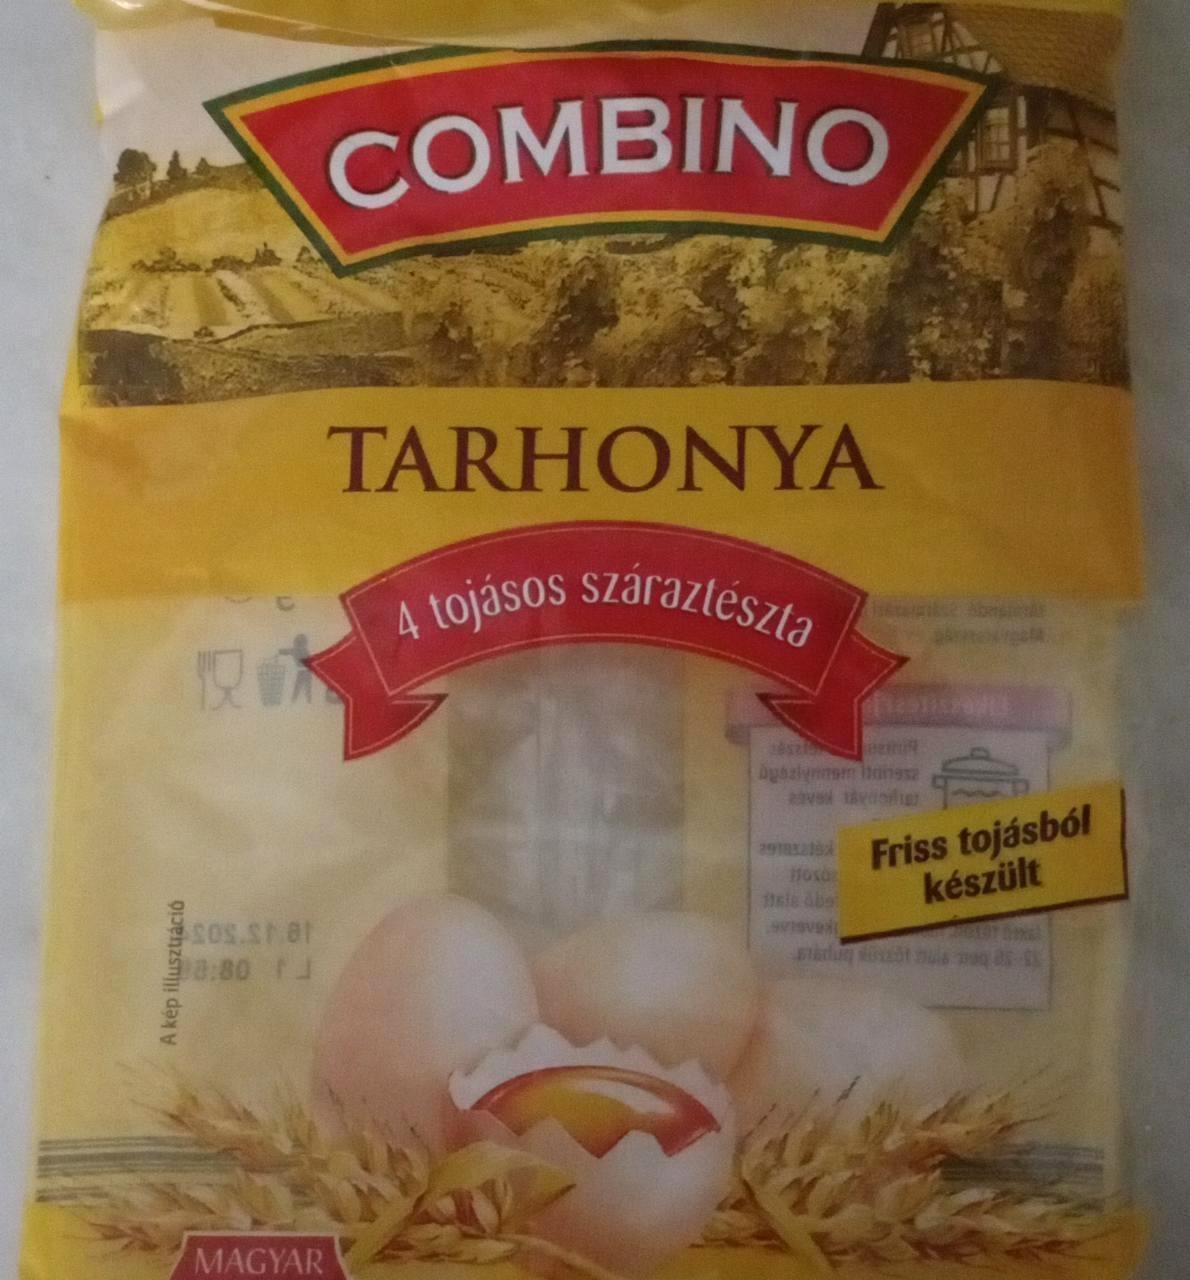 Képek - Tarhonya 4 tojásos száraz tészta Combino